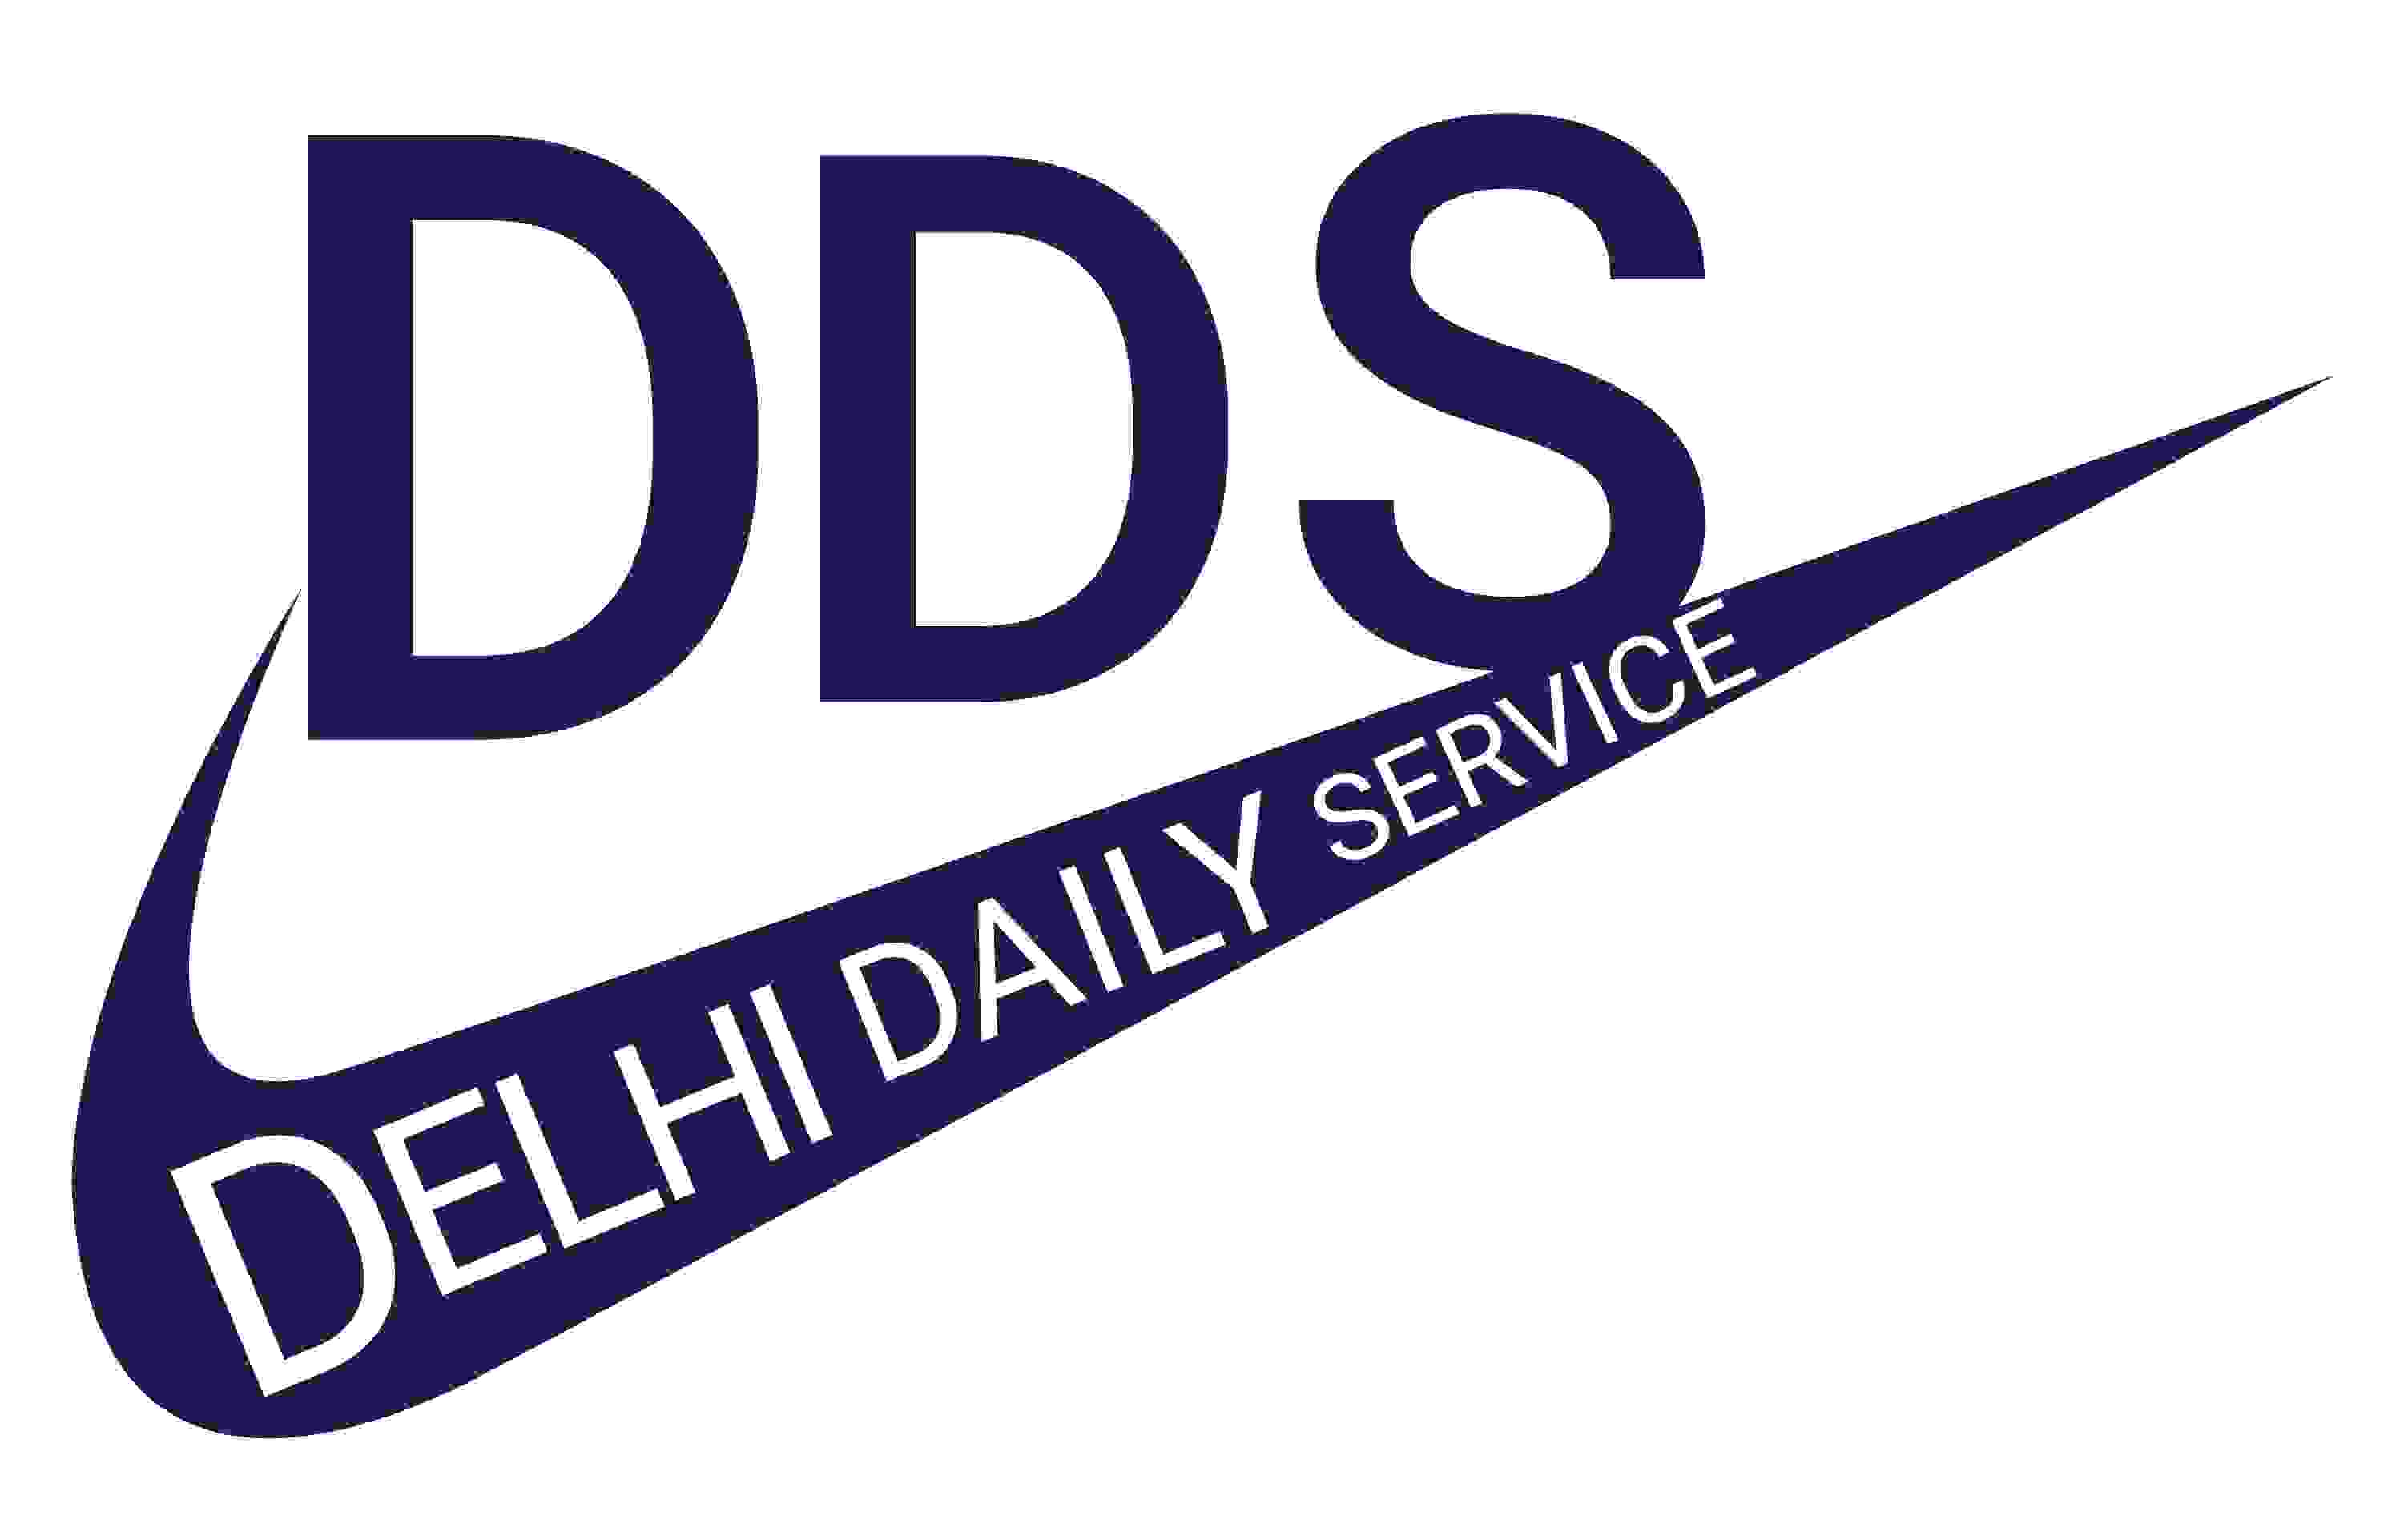 Avatar: delhi daily service